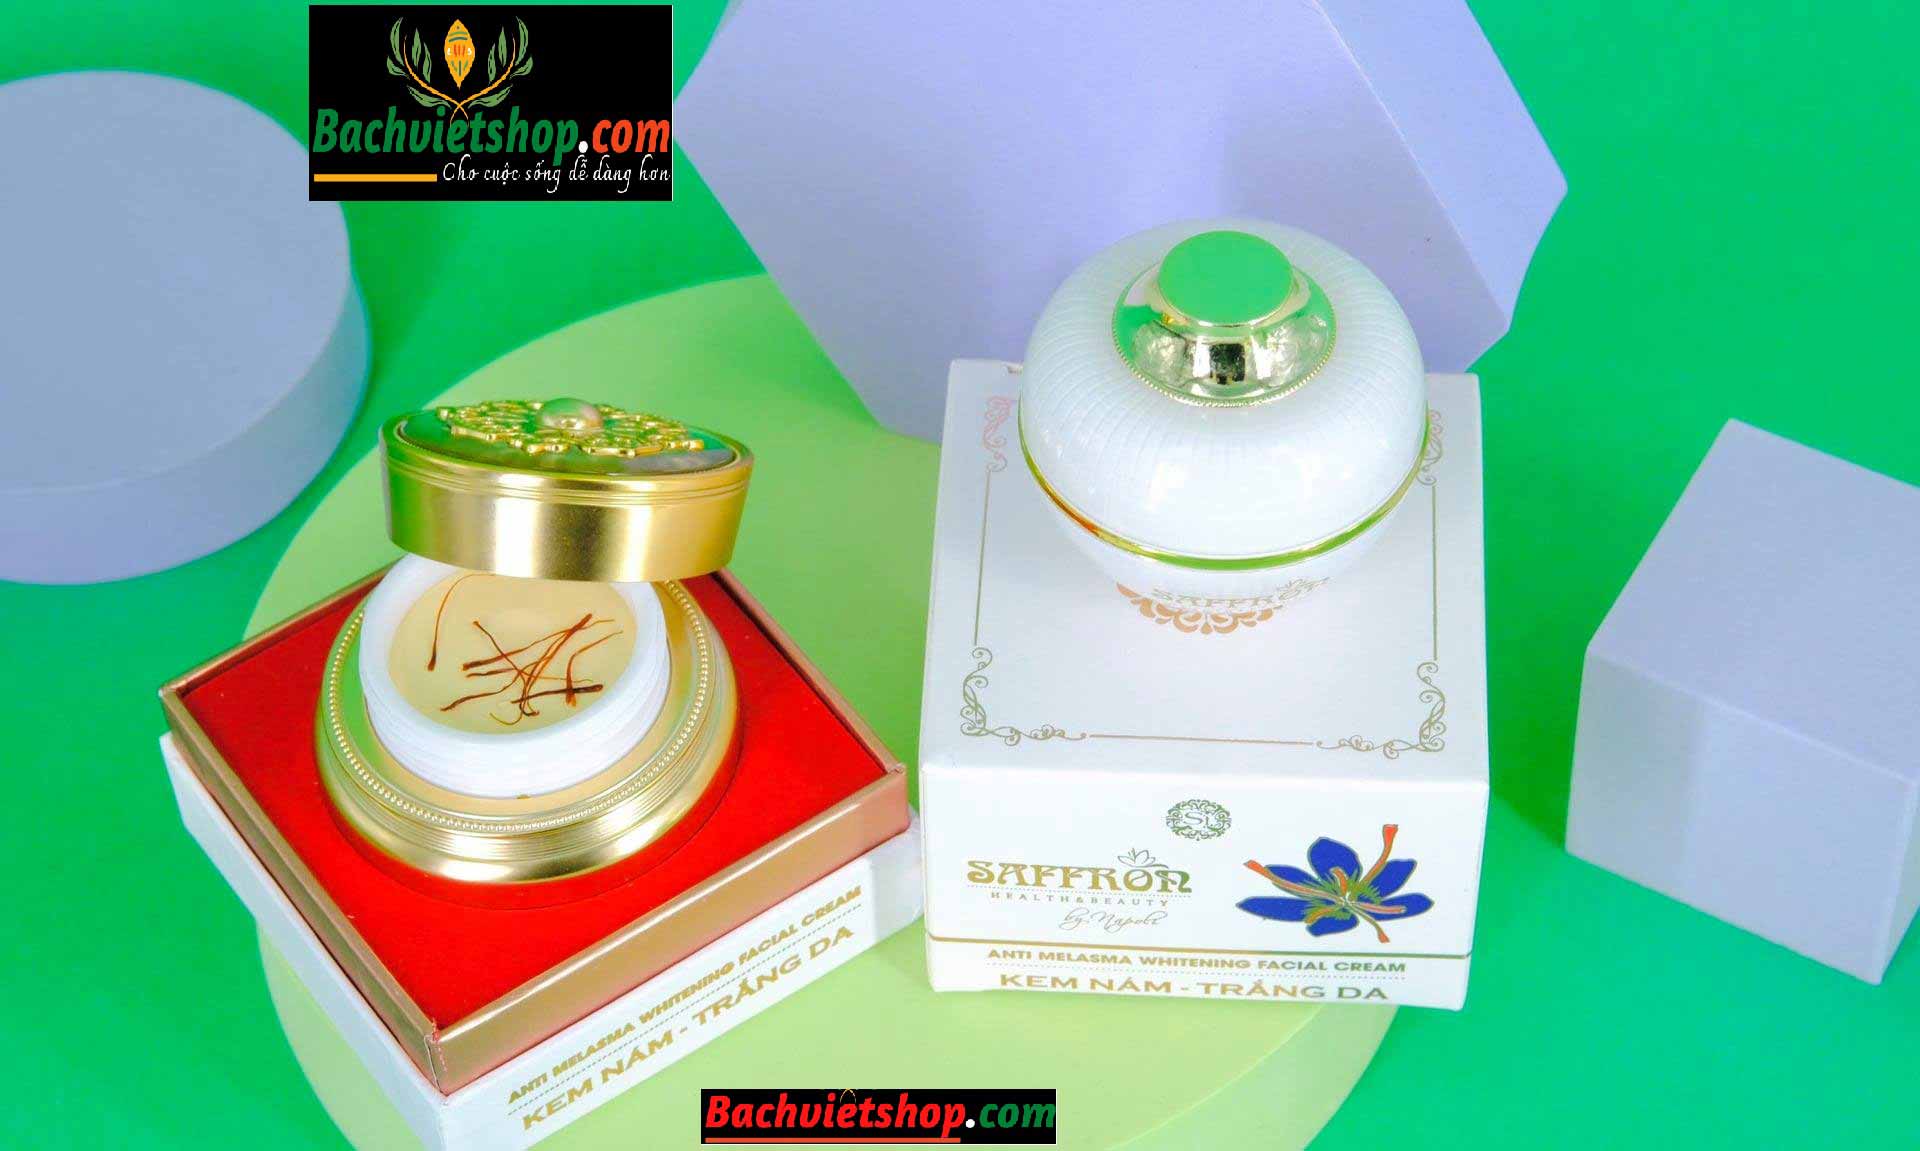 Saffron là một loại kem điều trị nám tàn nhang có nguồn gốc xuất xứ từ Việt Nam 